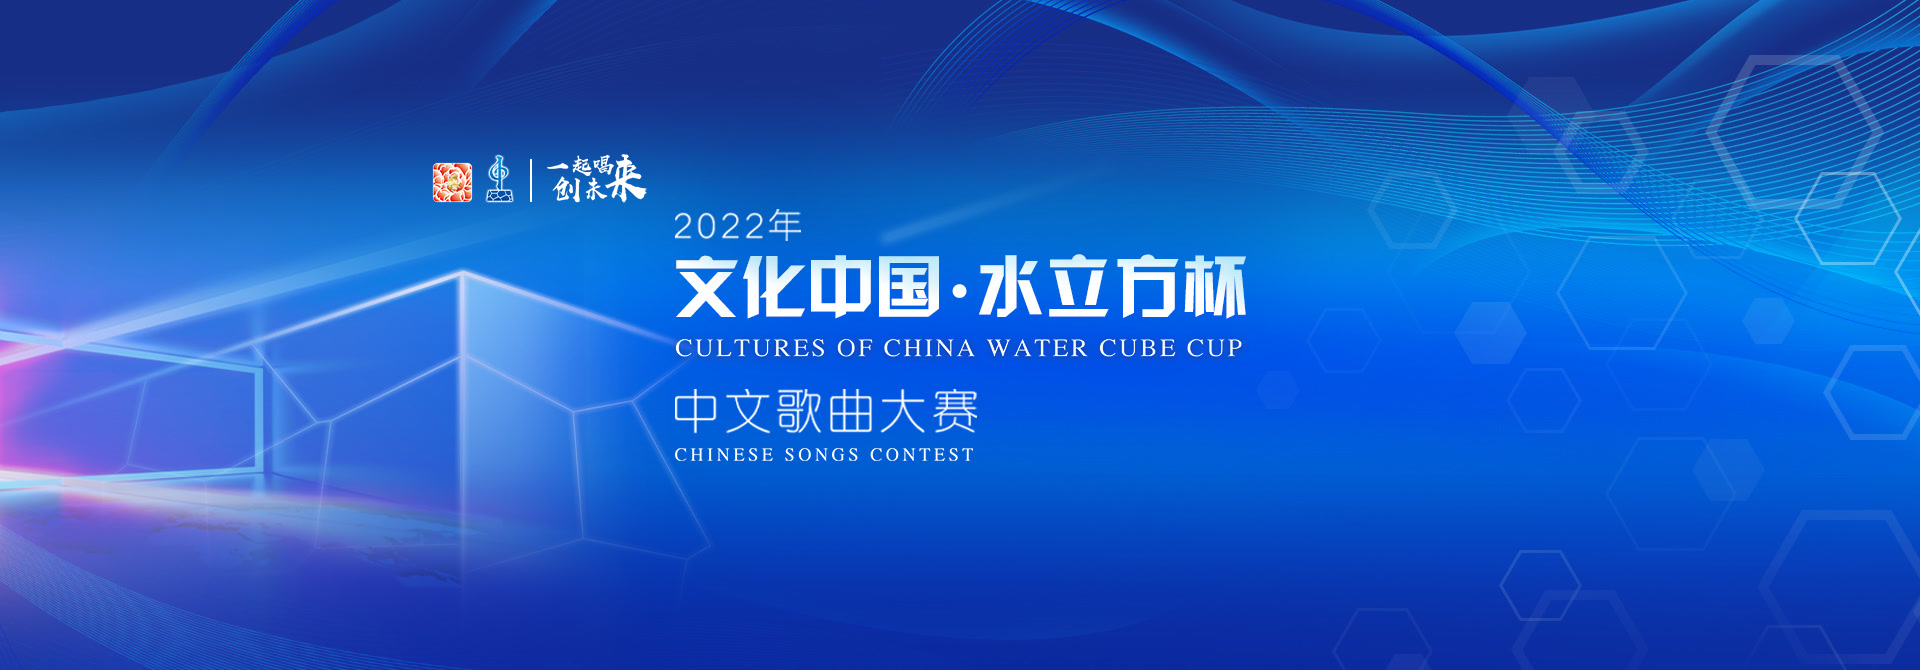 2022文化中国·水立方杯-专题